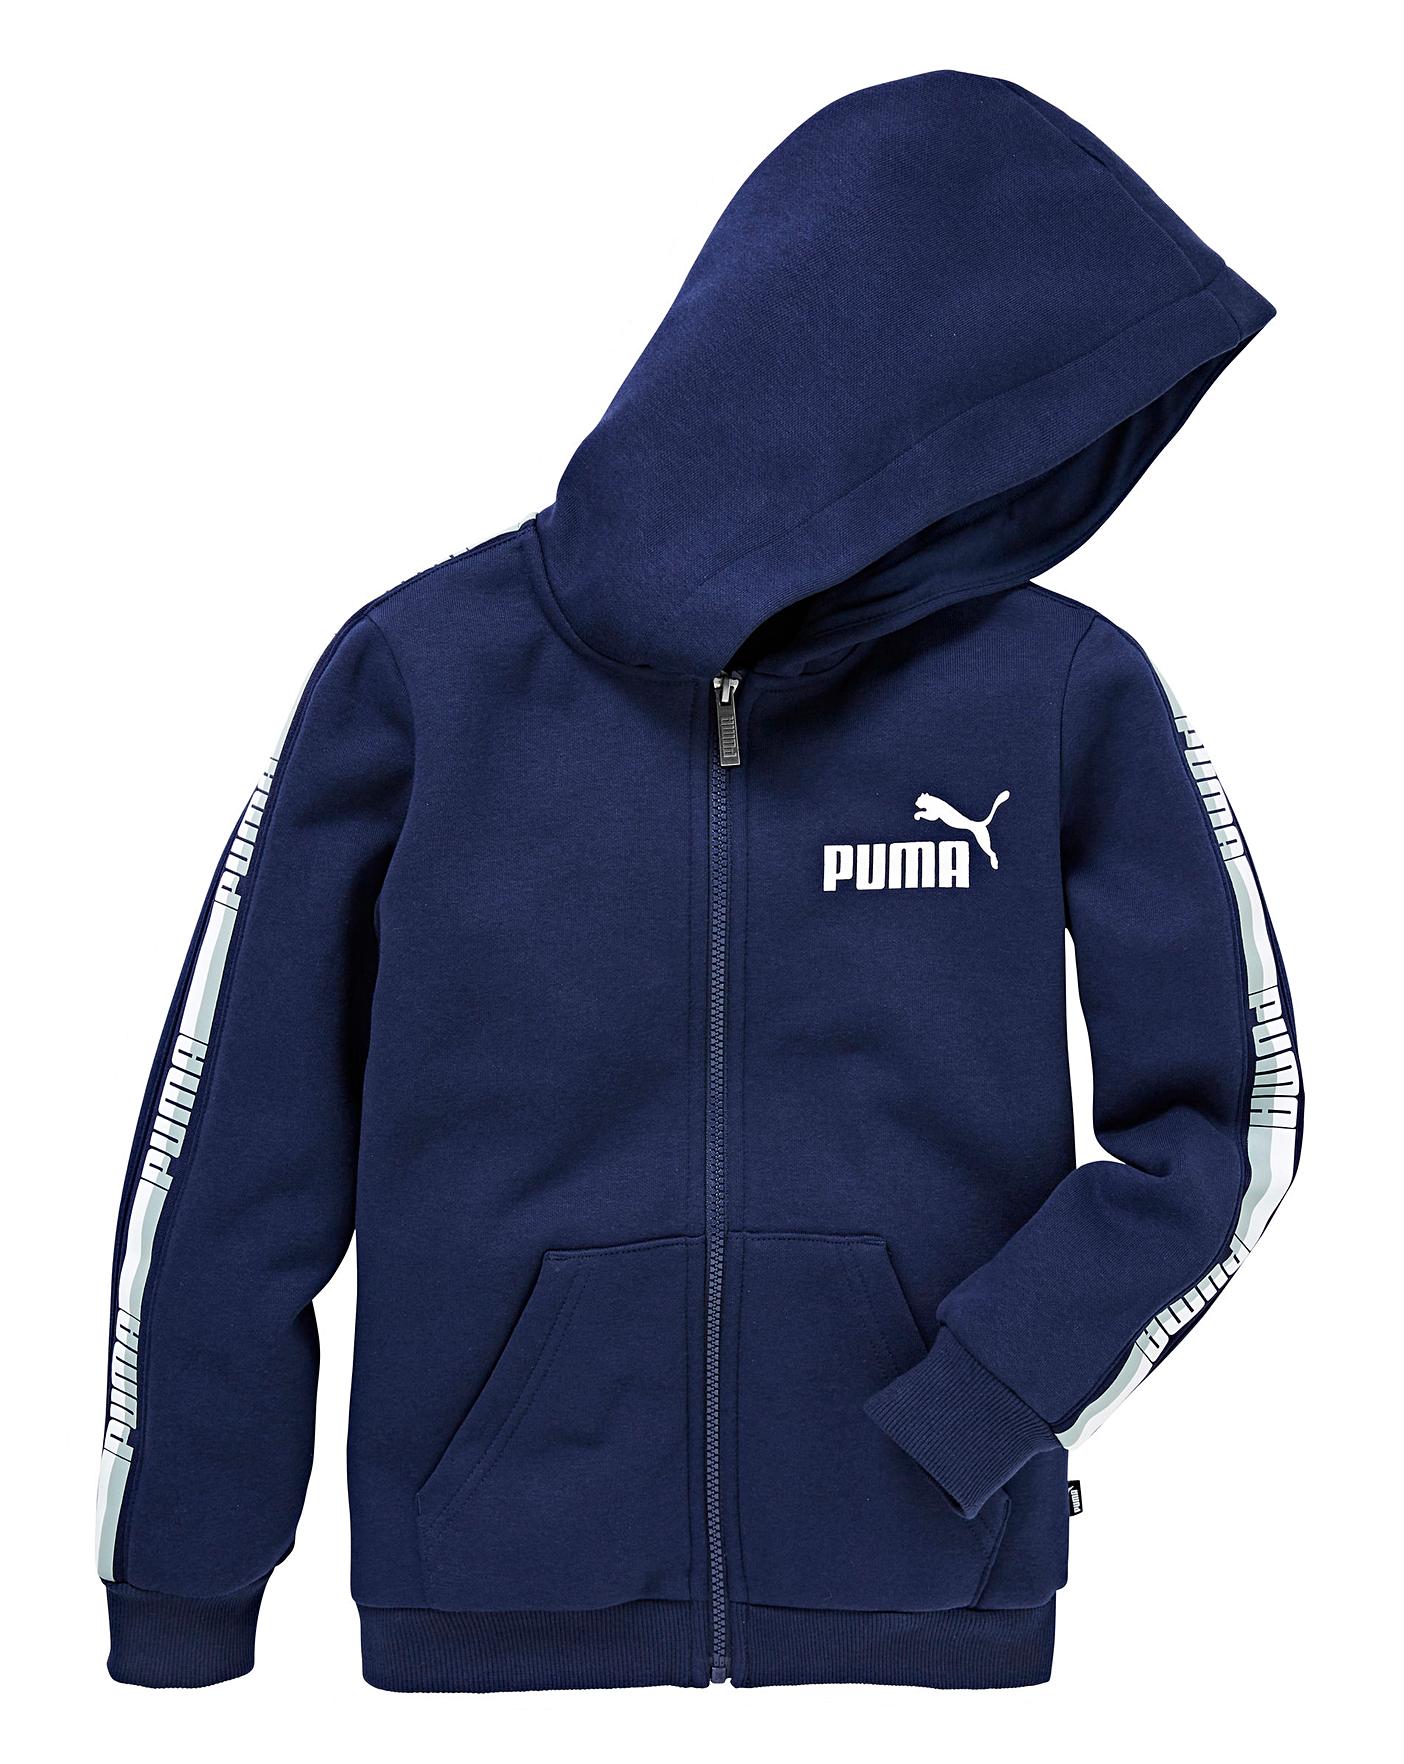 boys puma hoodie